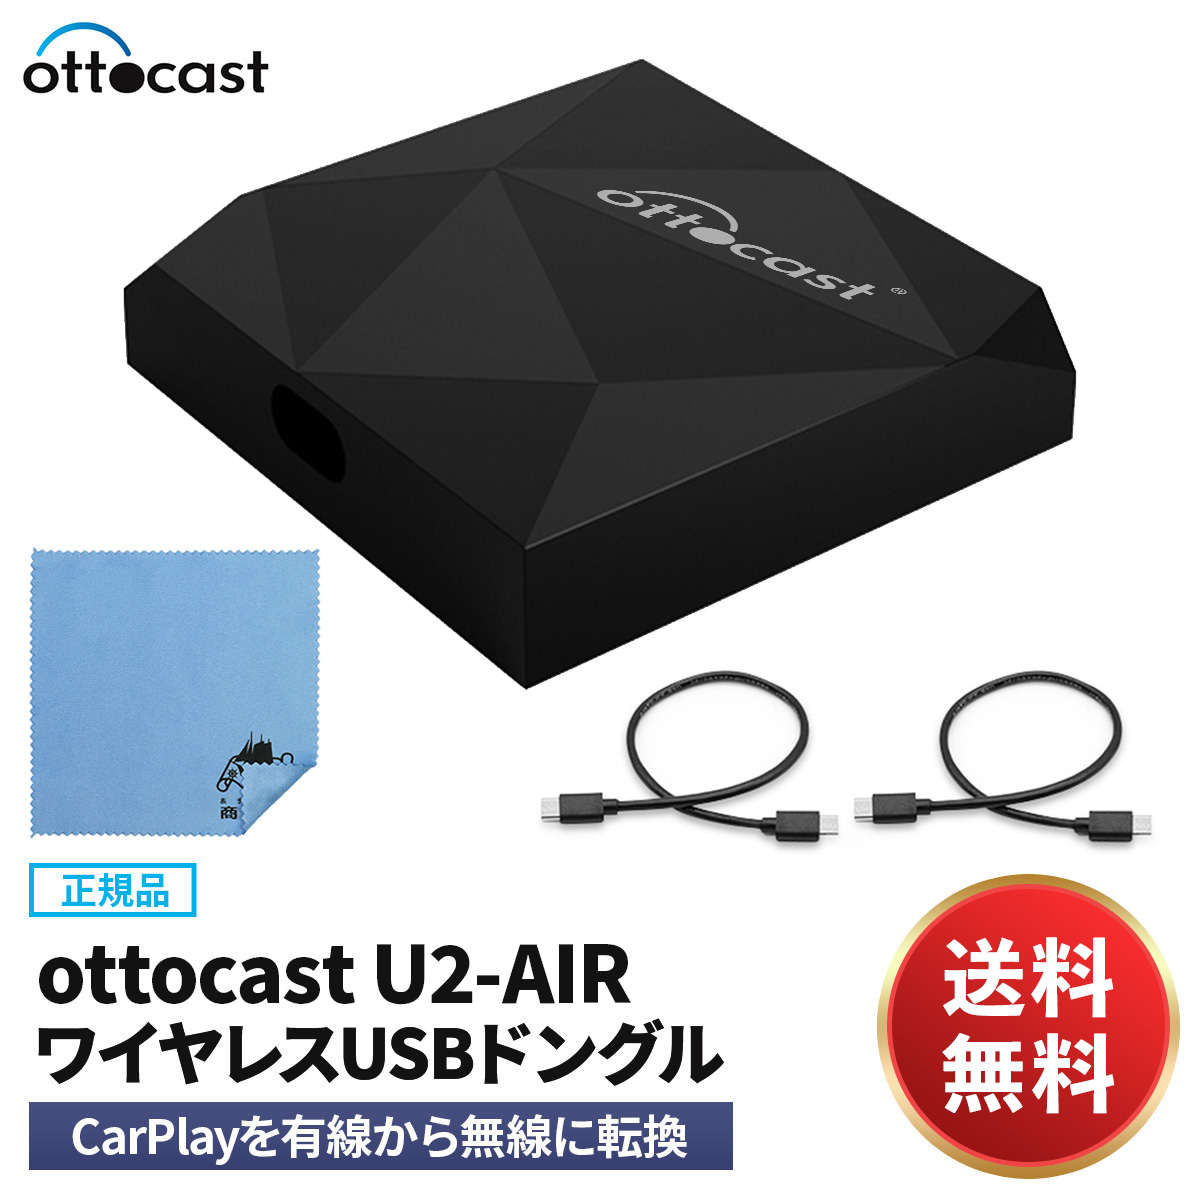 オットキャスト Ottocast  carplay アダプター U2-AIR ワイヤレスカープレイアダプター 通信速度向上 カープレイドングル 有線接続のみの純正CarPlayをワイヤレス化 無線化 iPhone対応 クリーニングクロス付き